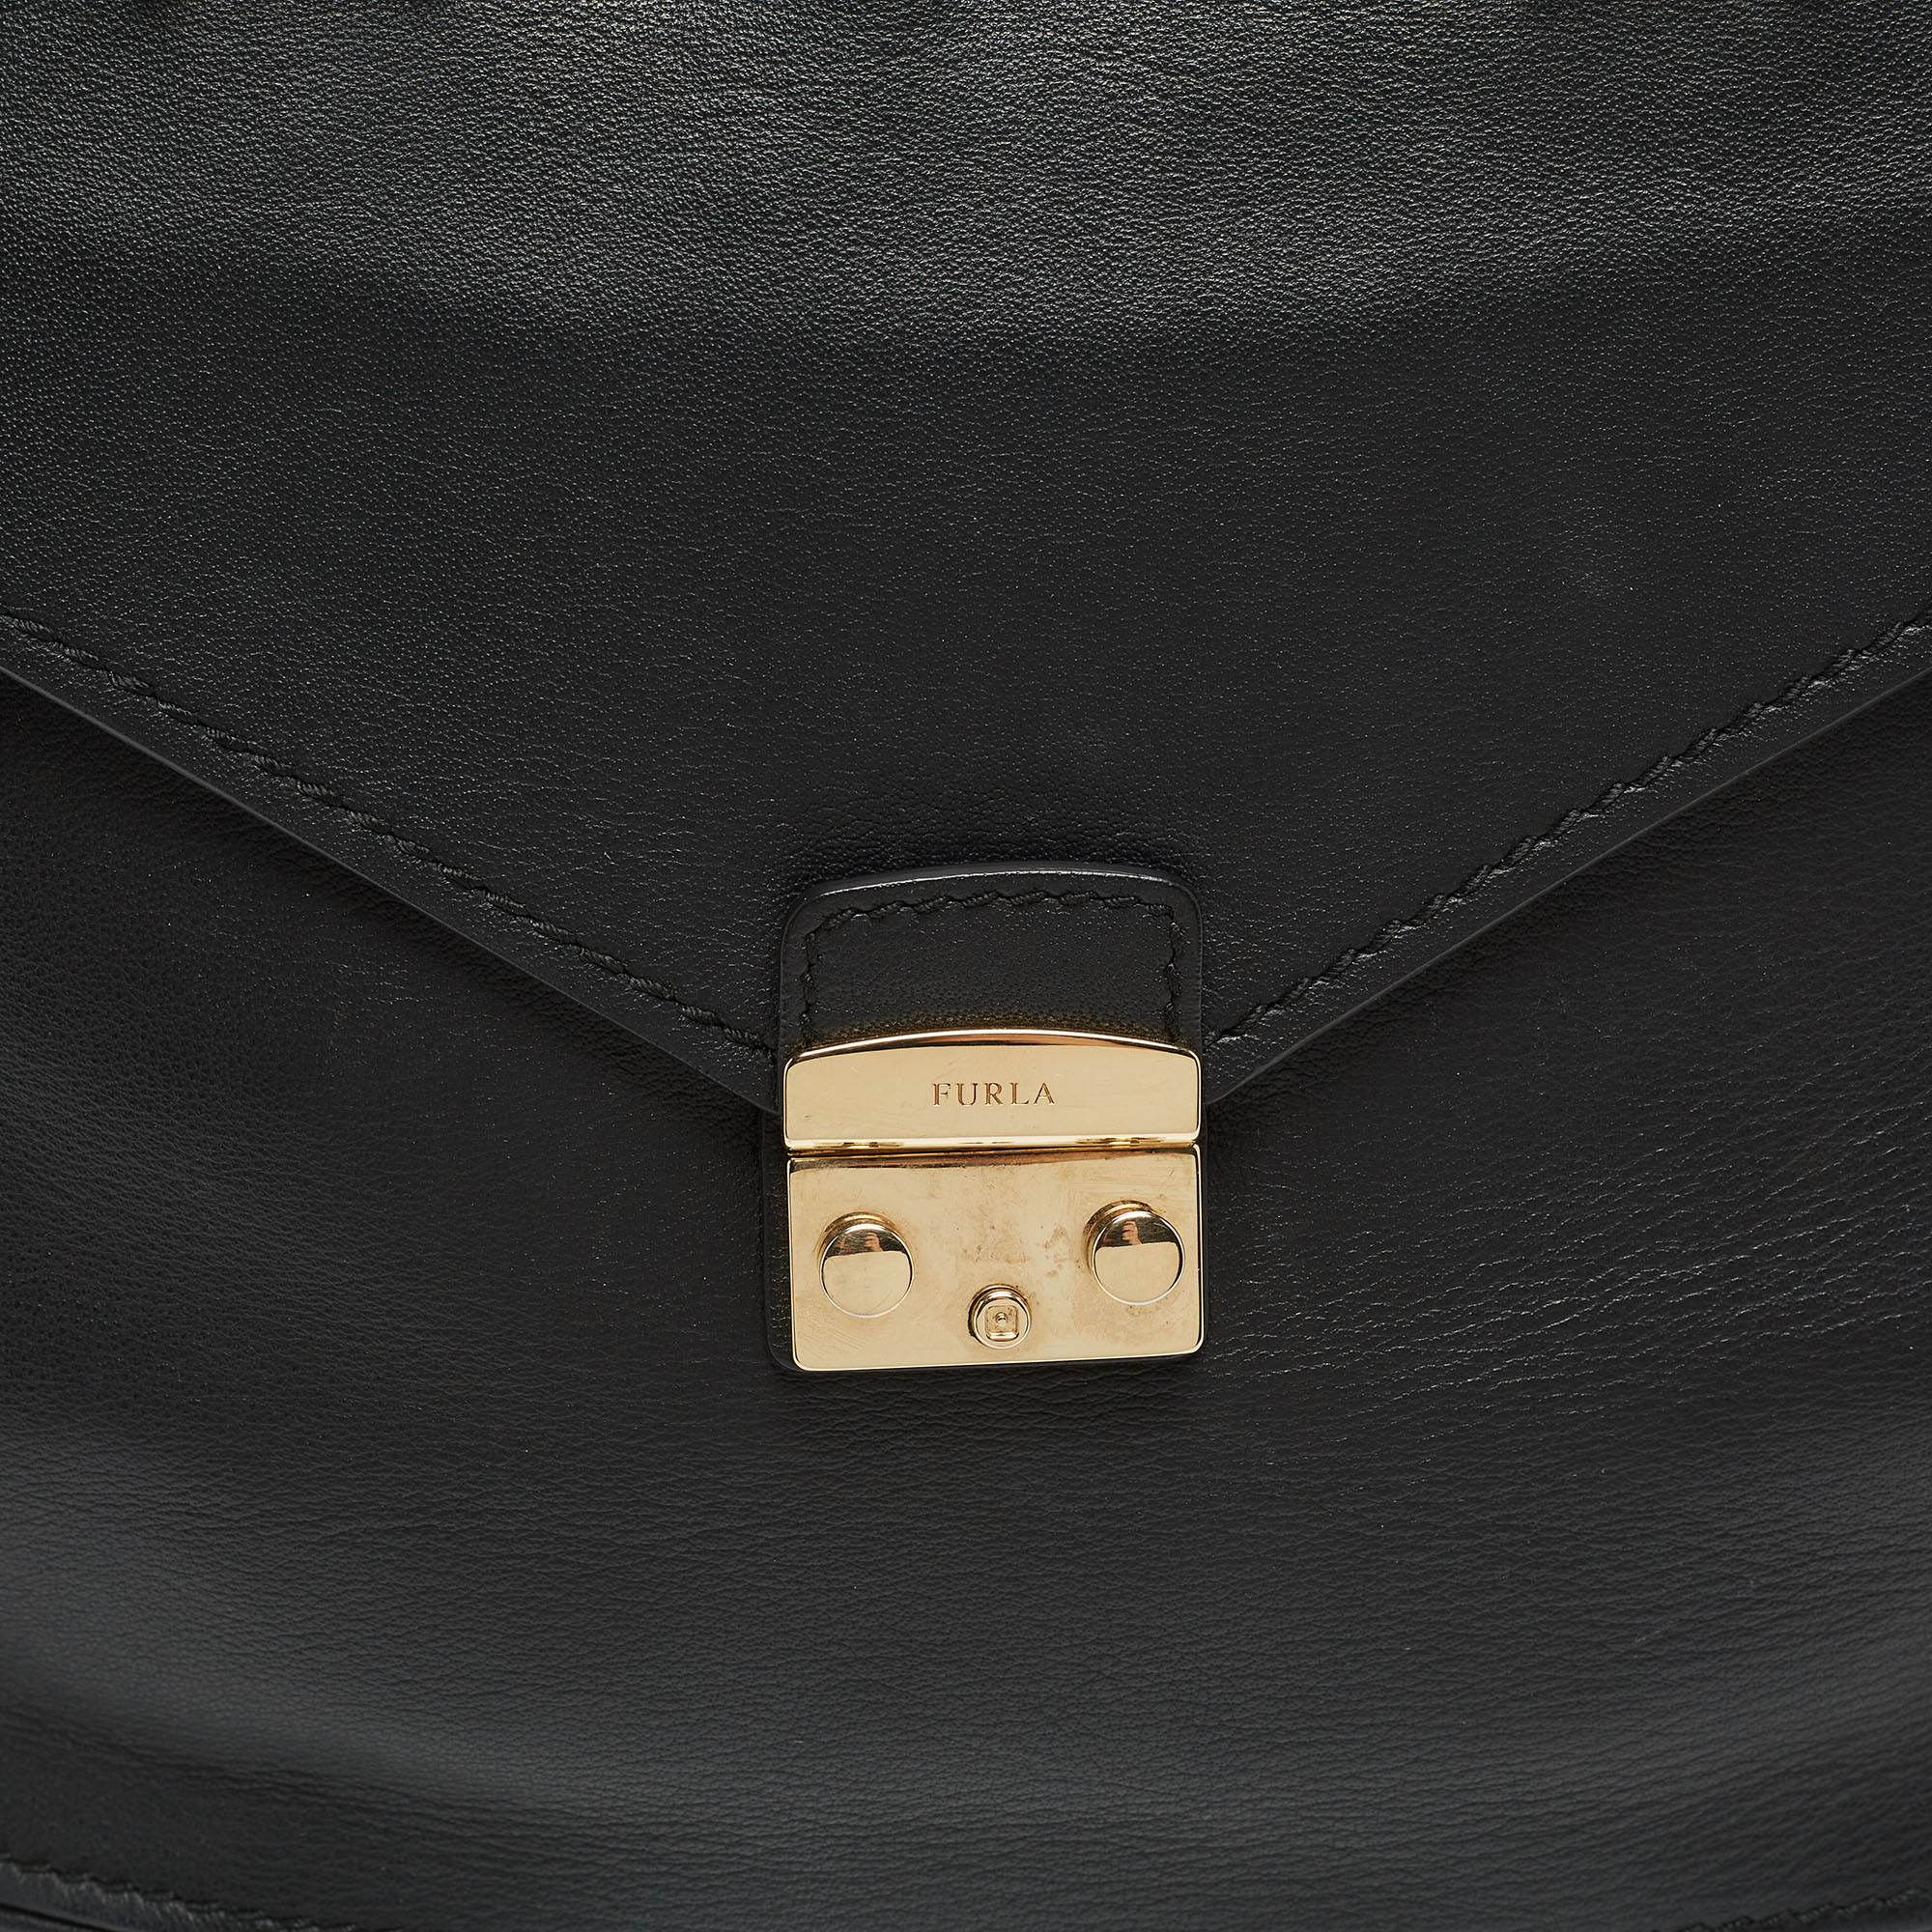 Furla Black Leather Front Pocket Dome Satchel